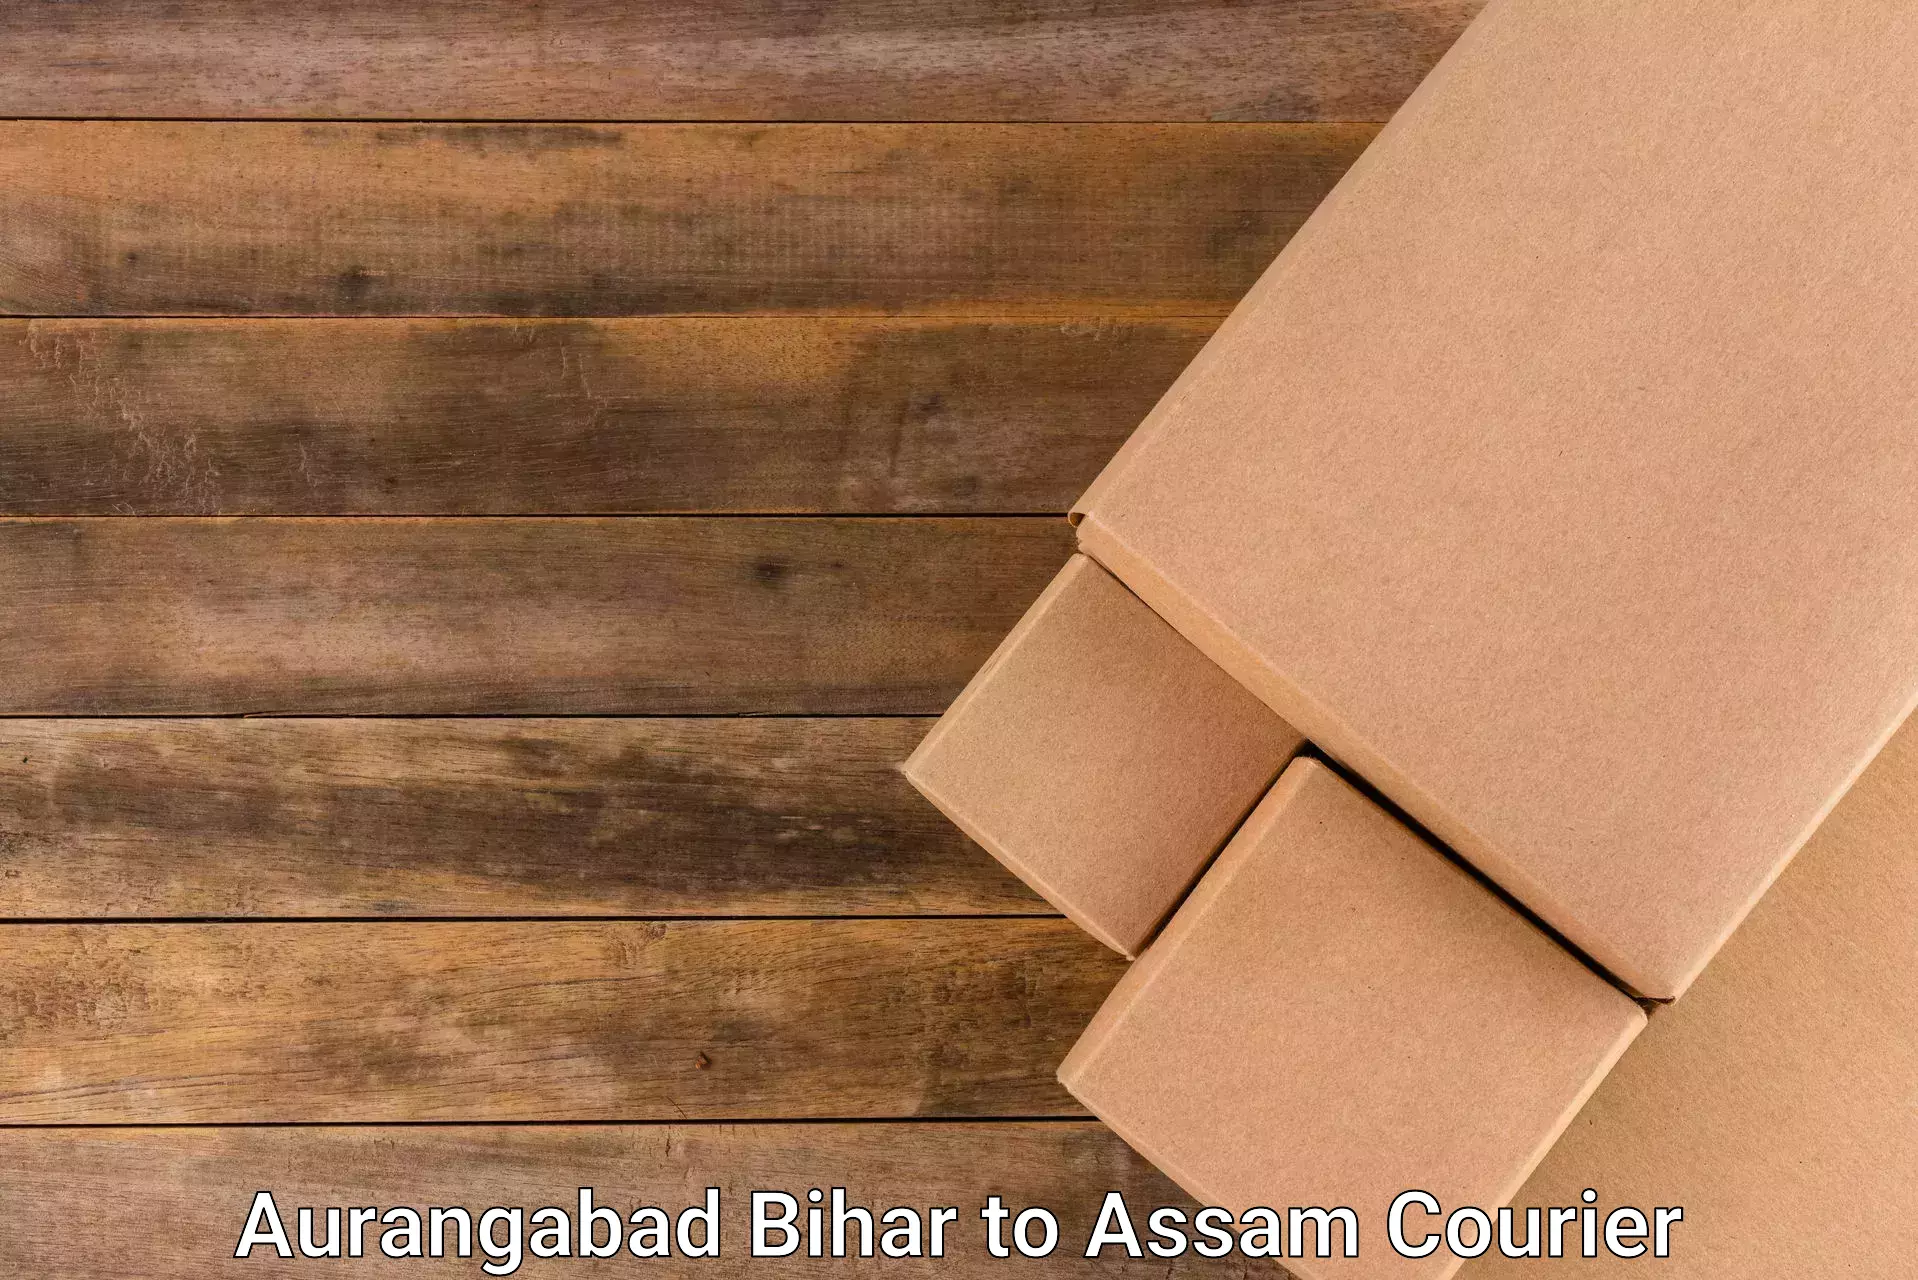 High value parcel delivery Aurangabad Bihar to Margherita